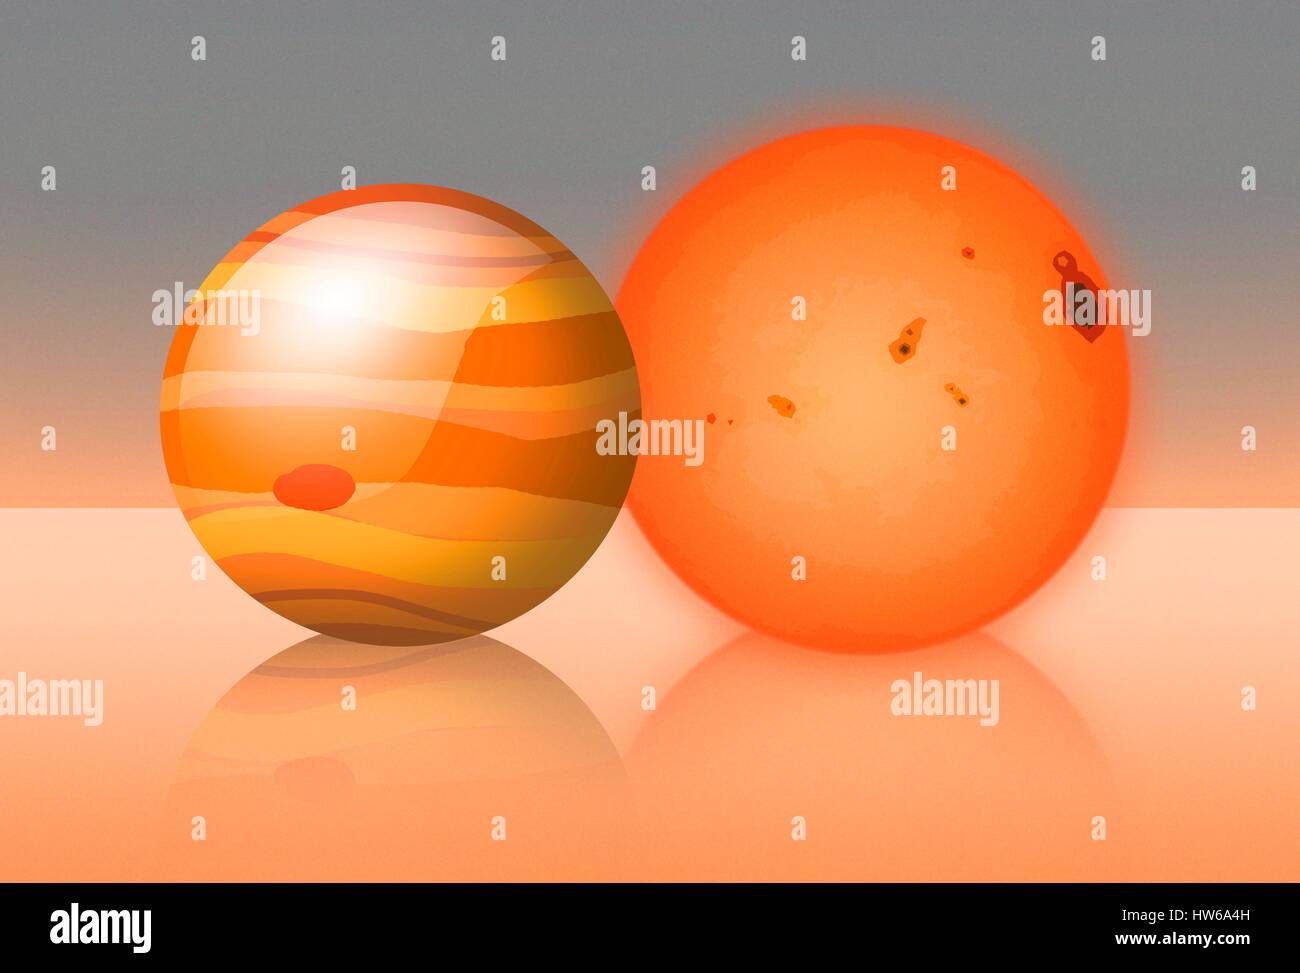 Trapense-1 es una estrella enana roja ΓÇô la variedad más común ΓÇô situado a unos 40 años luz de distancia en Acuario. En 2015, los astrónomos descubrieron que trapense-1 fue anfitrión de tres planetas del tamaño de la tierra. Luego llegó a ser el centro de atención en 2017 cuando los científicos de la NASA encontró un período adicional de cuatro planetas, llevando el total a siete. Trapense-1 es sólo ligeramente más grande que Júpiter en diámetro; Esta imagen muestra a la misma escala. Esta es la mayoría de los planetas terrestres que nunca se han encontrado en órbita alrededor de una estrella, incluido nuestro propio Sistema Solar. Foto de stock